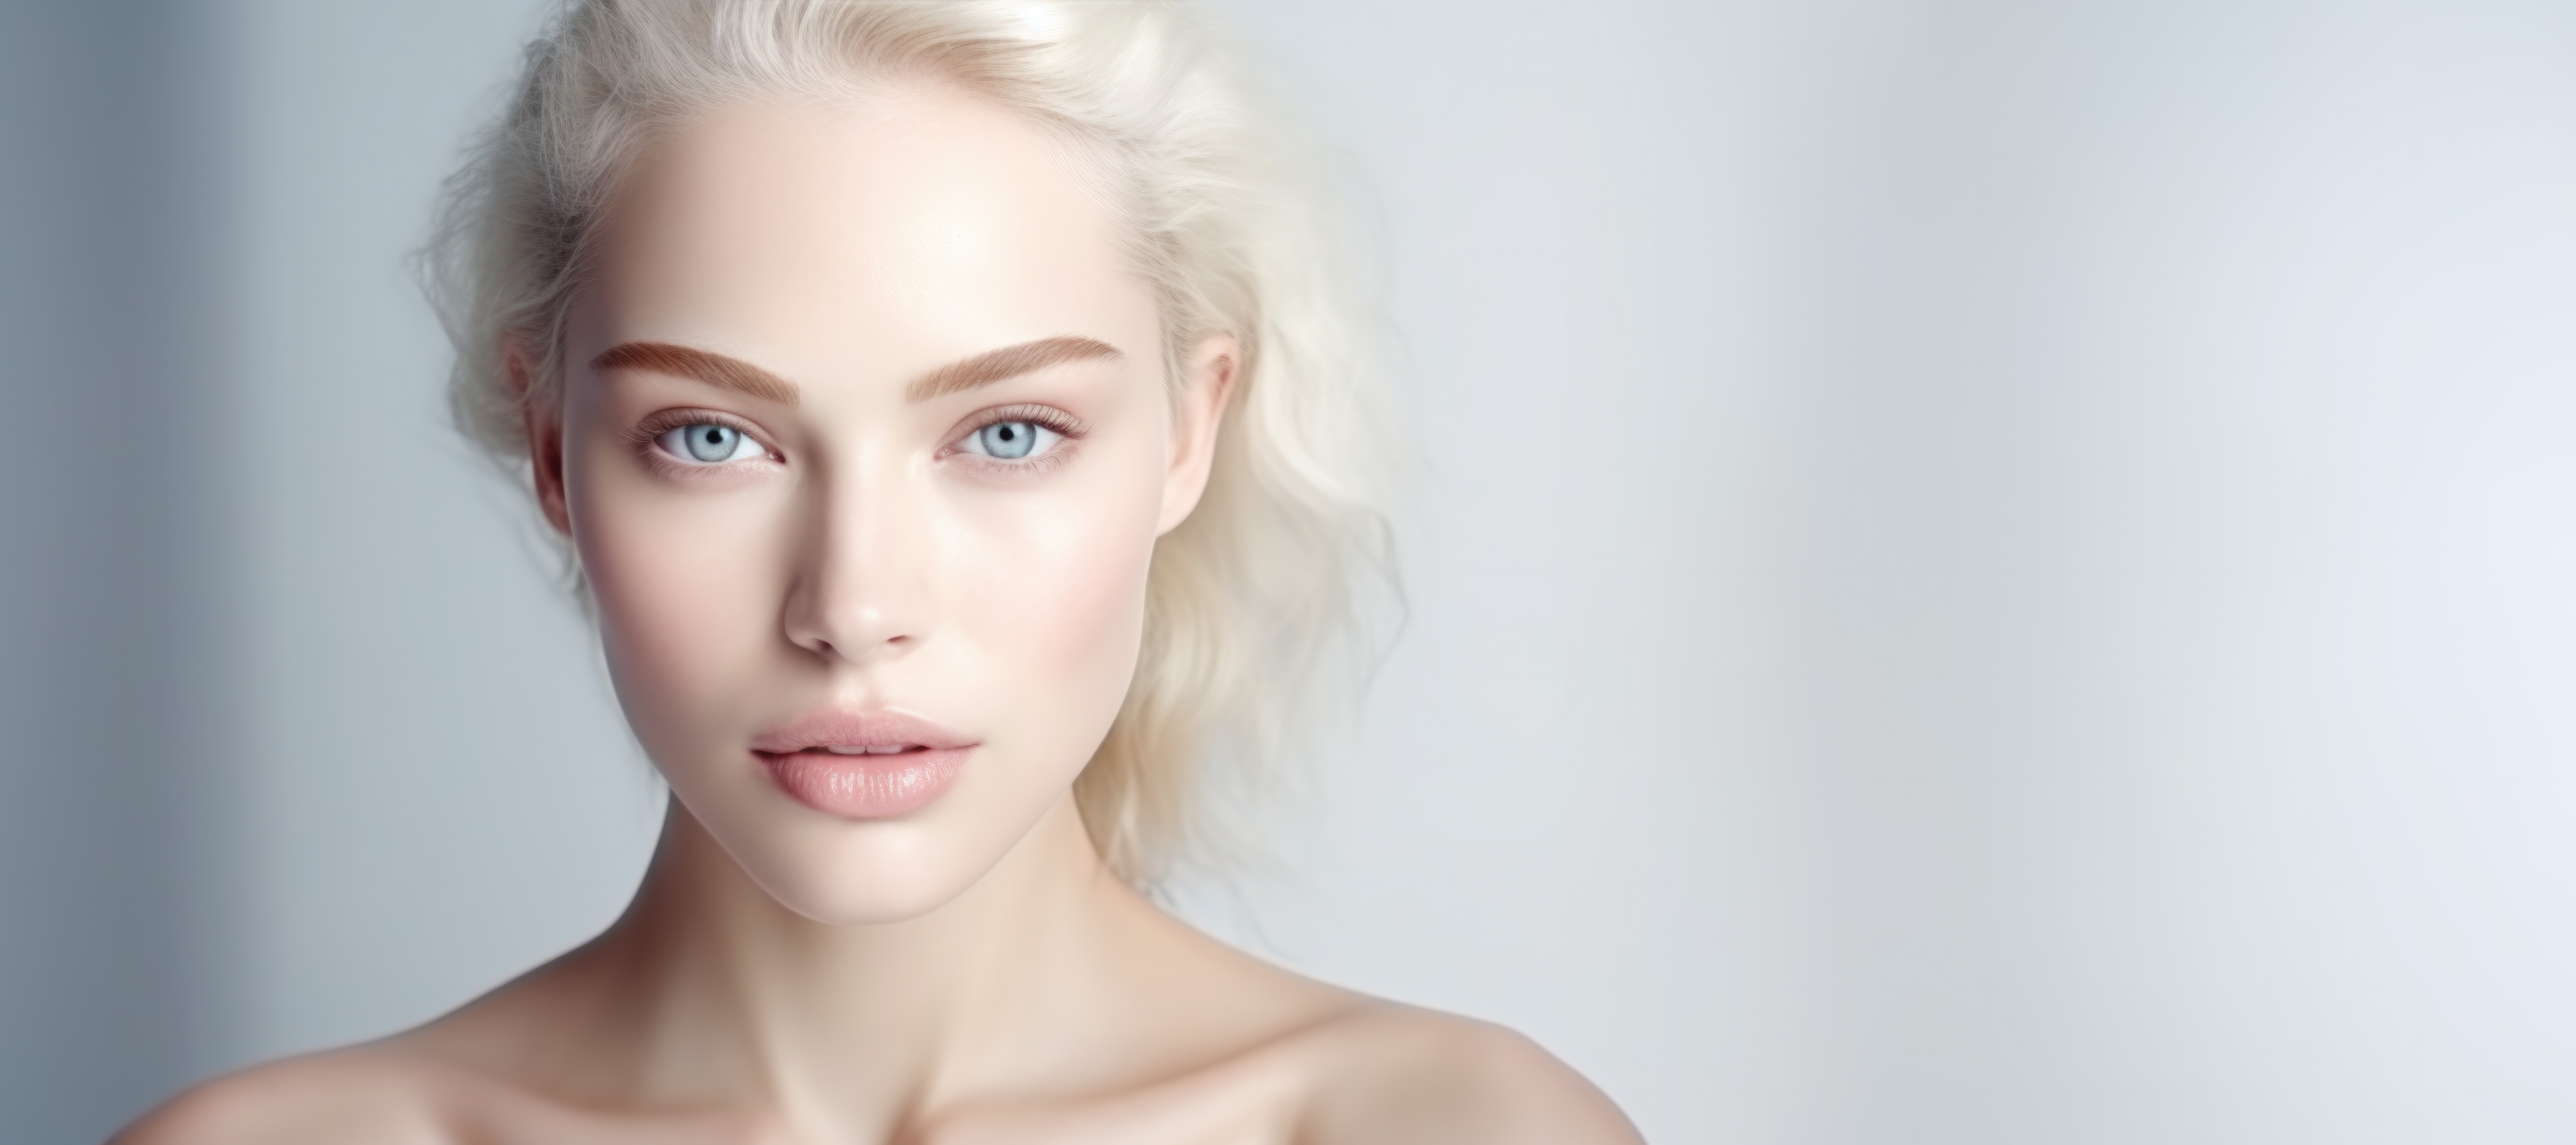 Soft Woman Face Portrait for Beauty Salon Treatment Skin Product